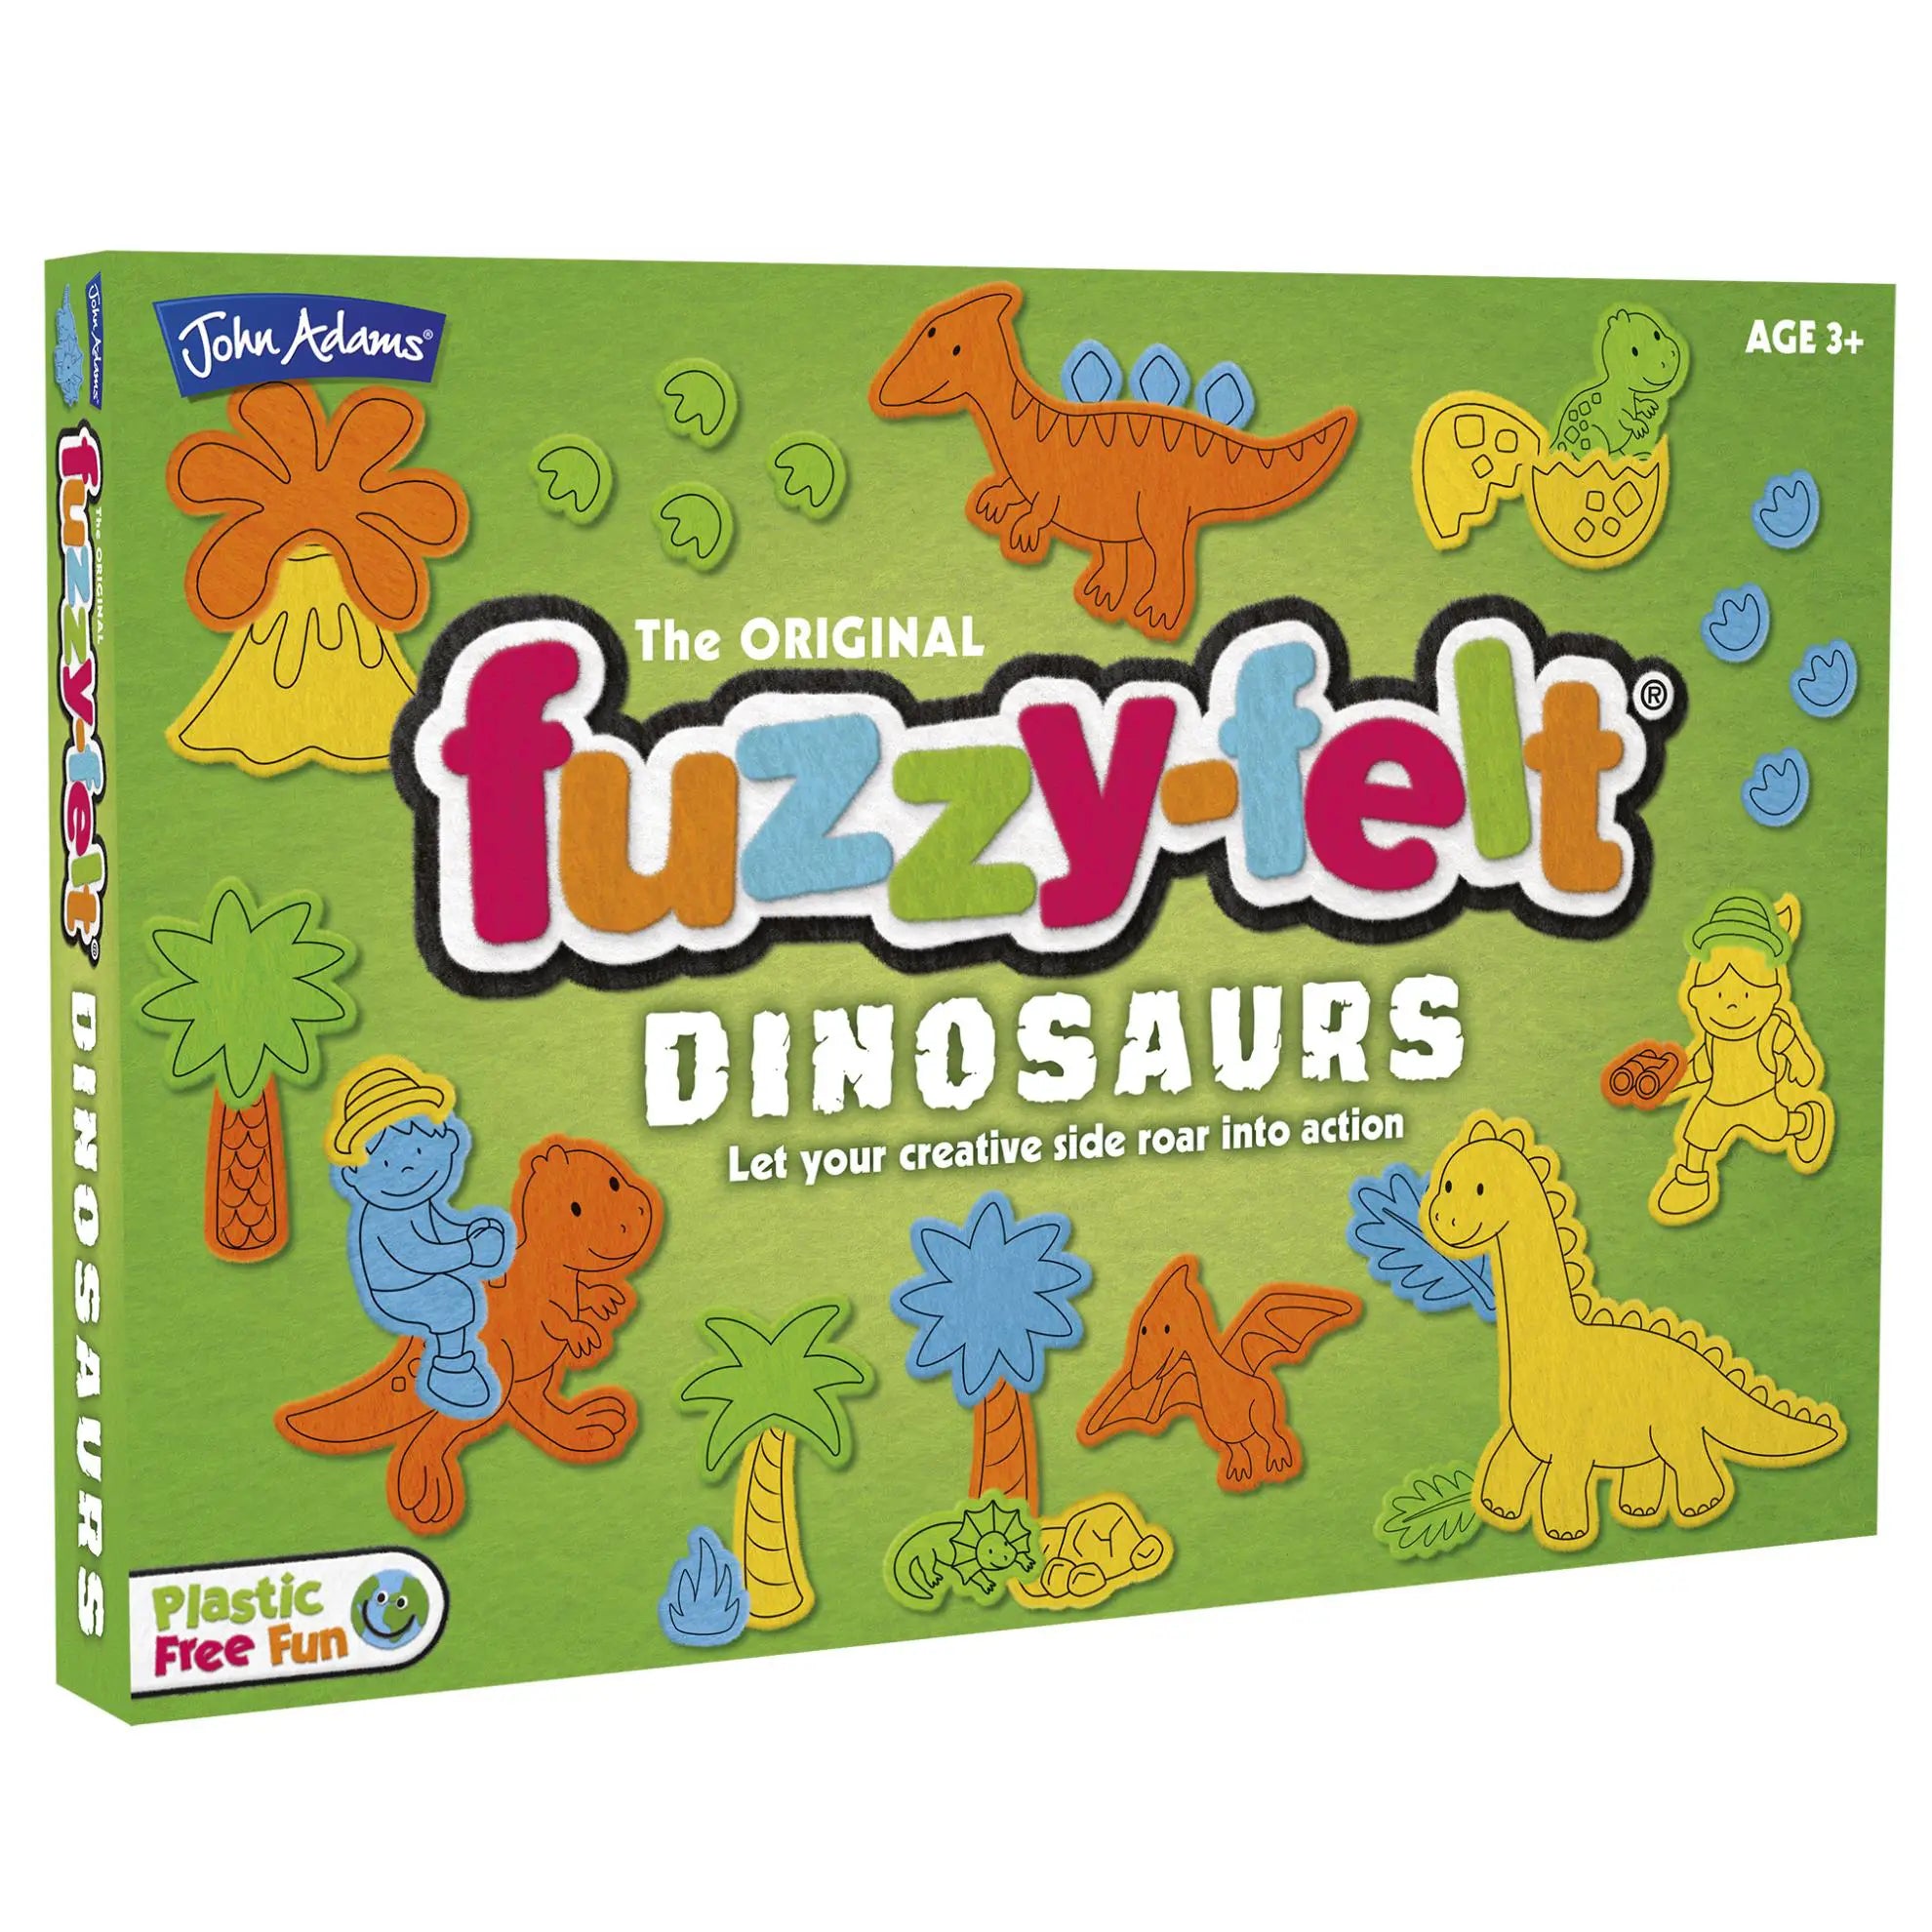 Fuzzy-Felt Dinosaurs